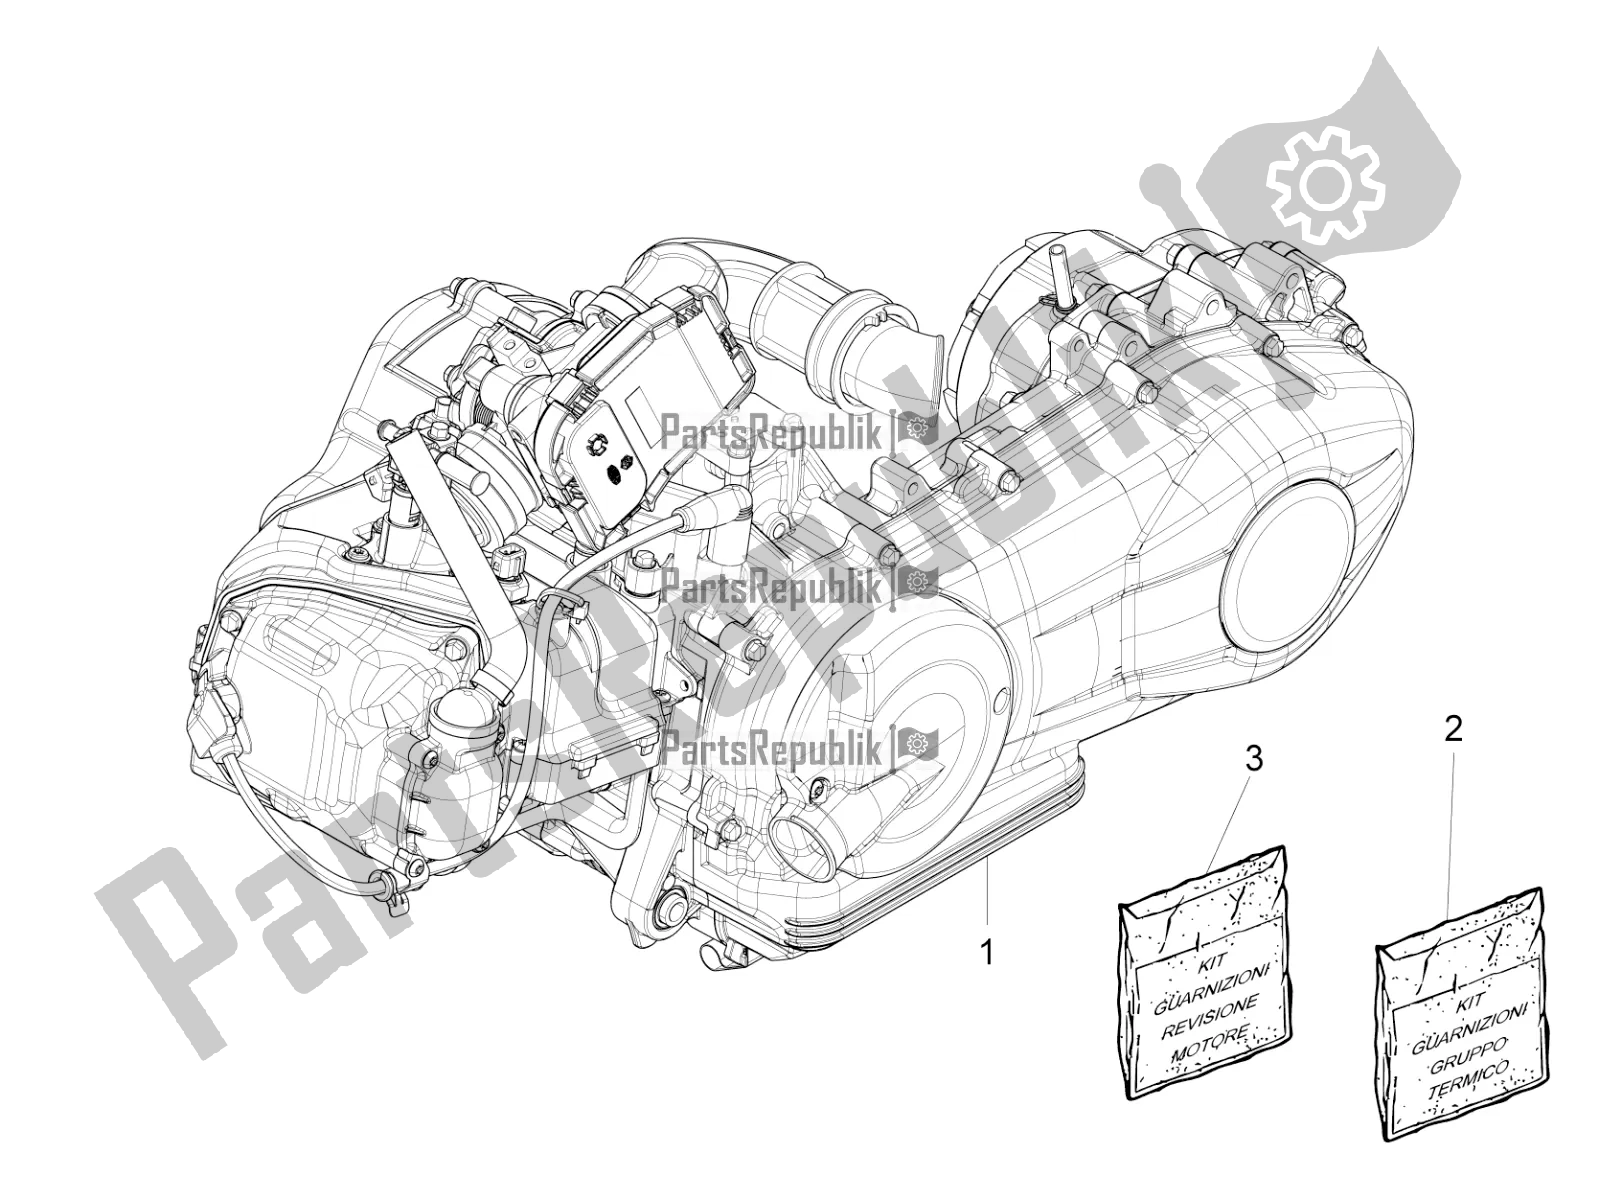 Alle onderdelen voor de Motor Assemblage van de Piaggio Liberty 150 Iget ABS Apac 2019